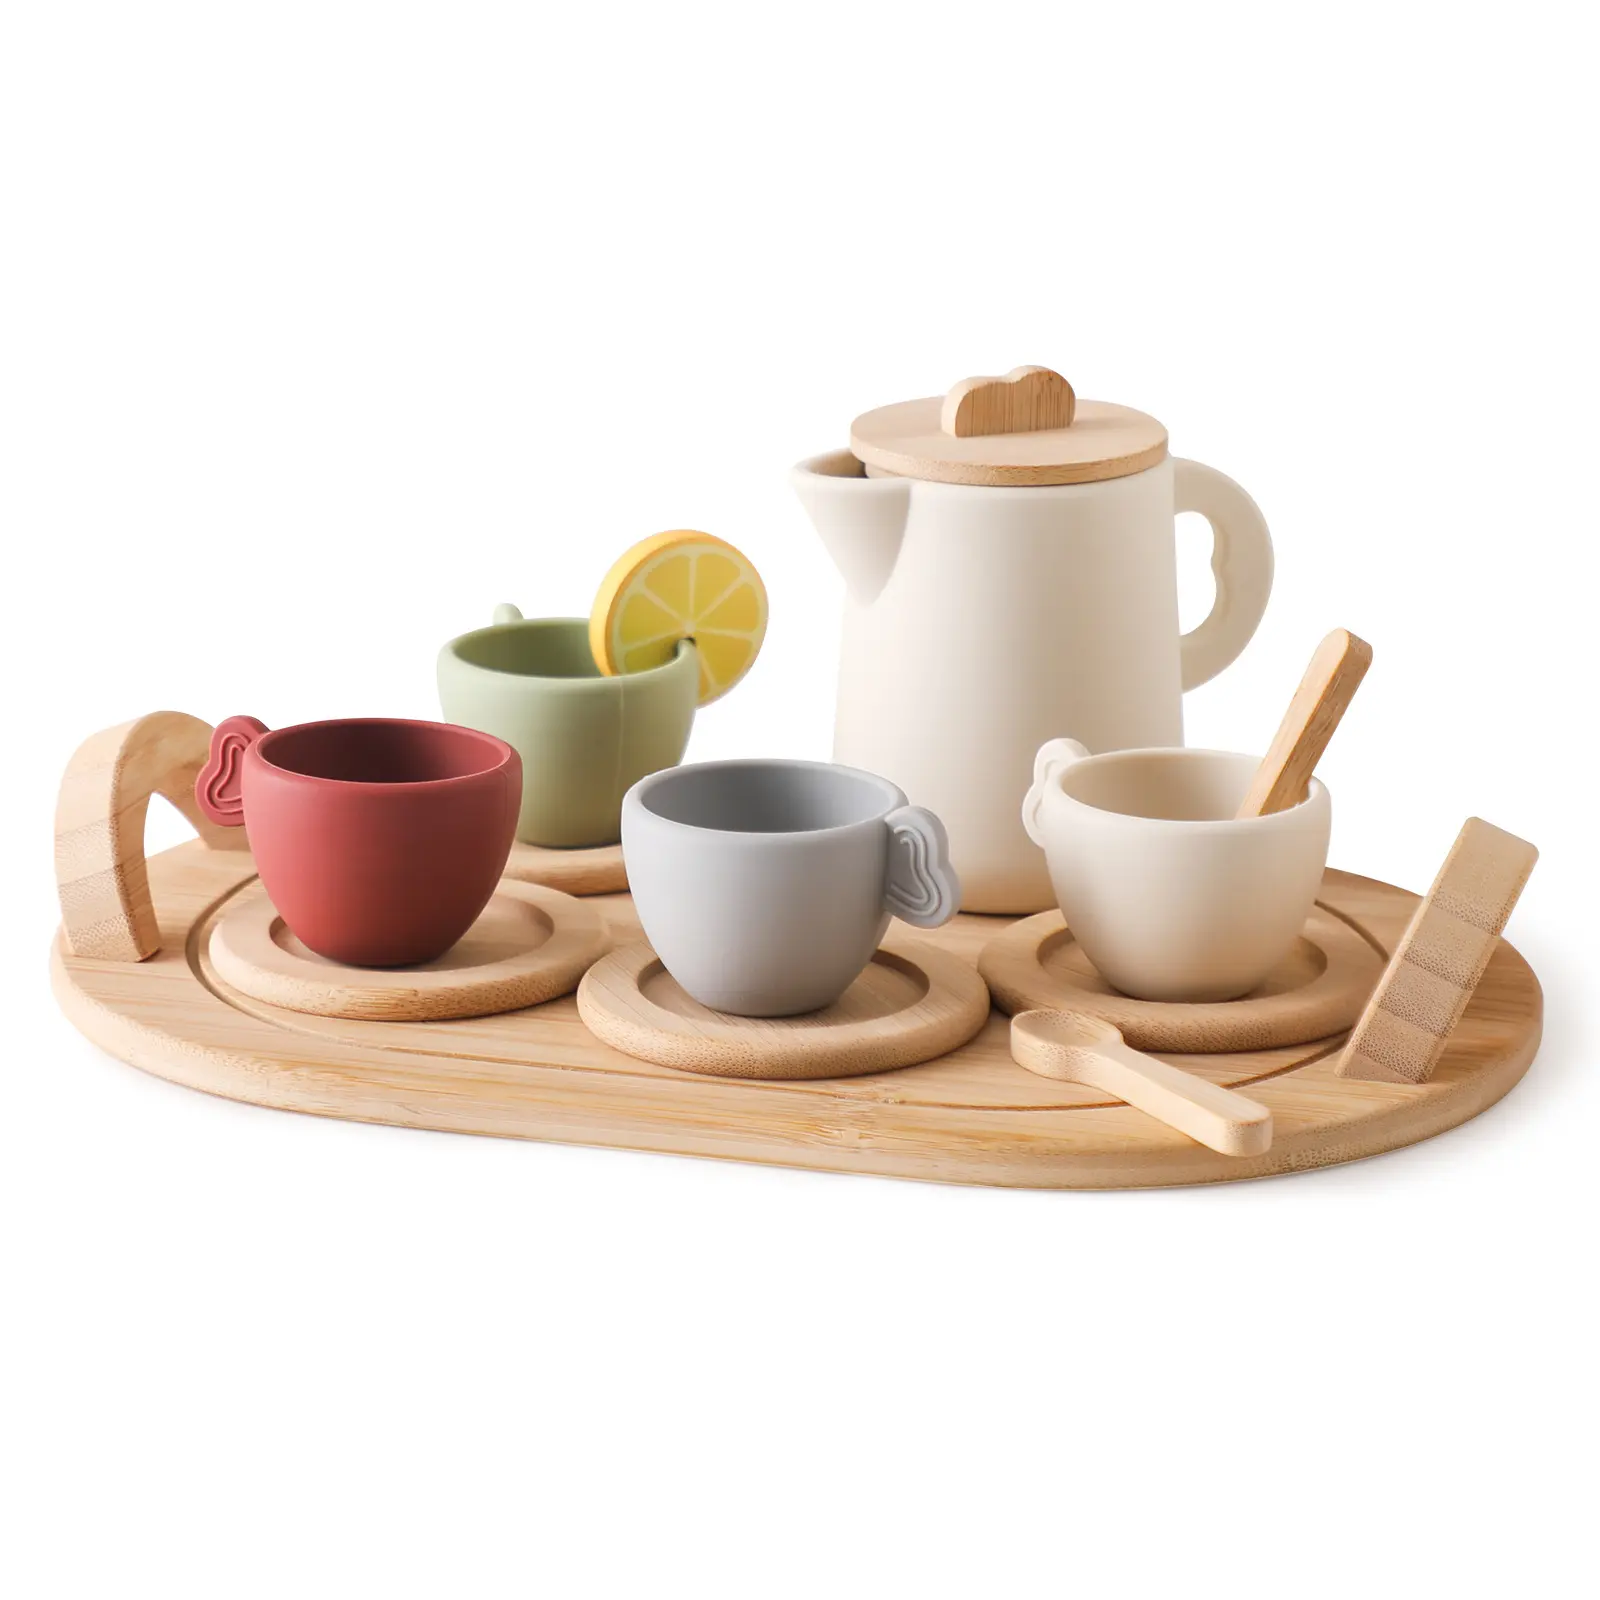 Посуда игровой набор кухонные аксессуары игрушки Дерево послеобеденный чай набор ролевые игры